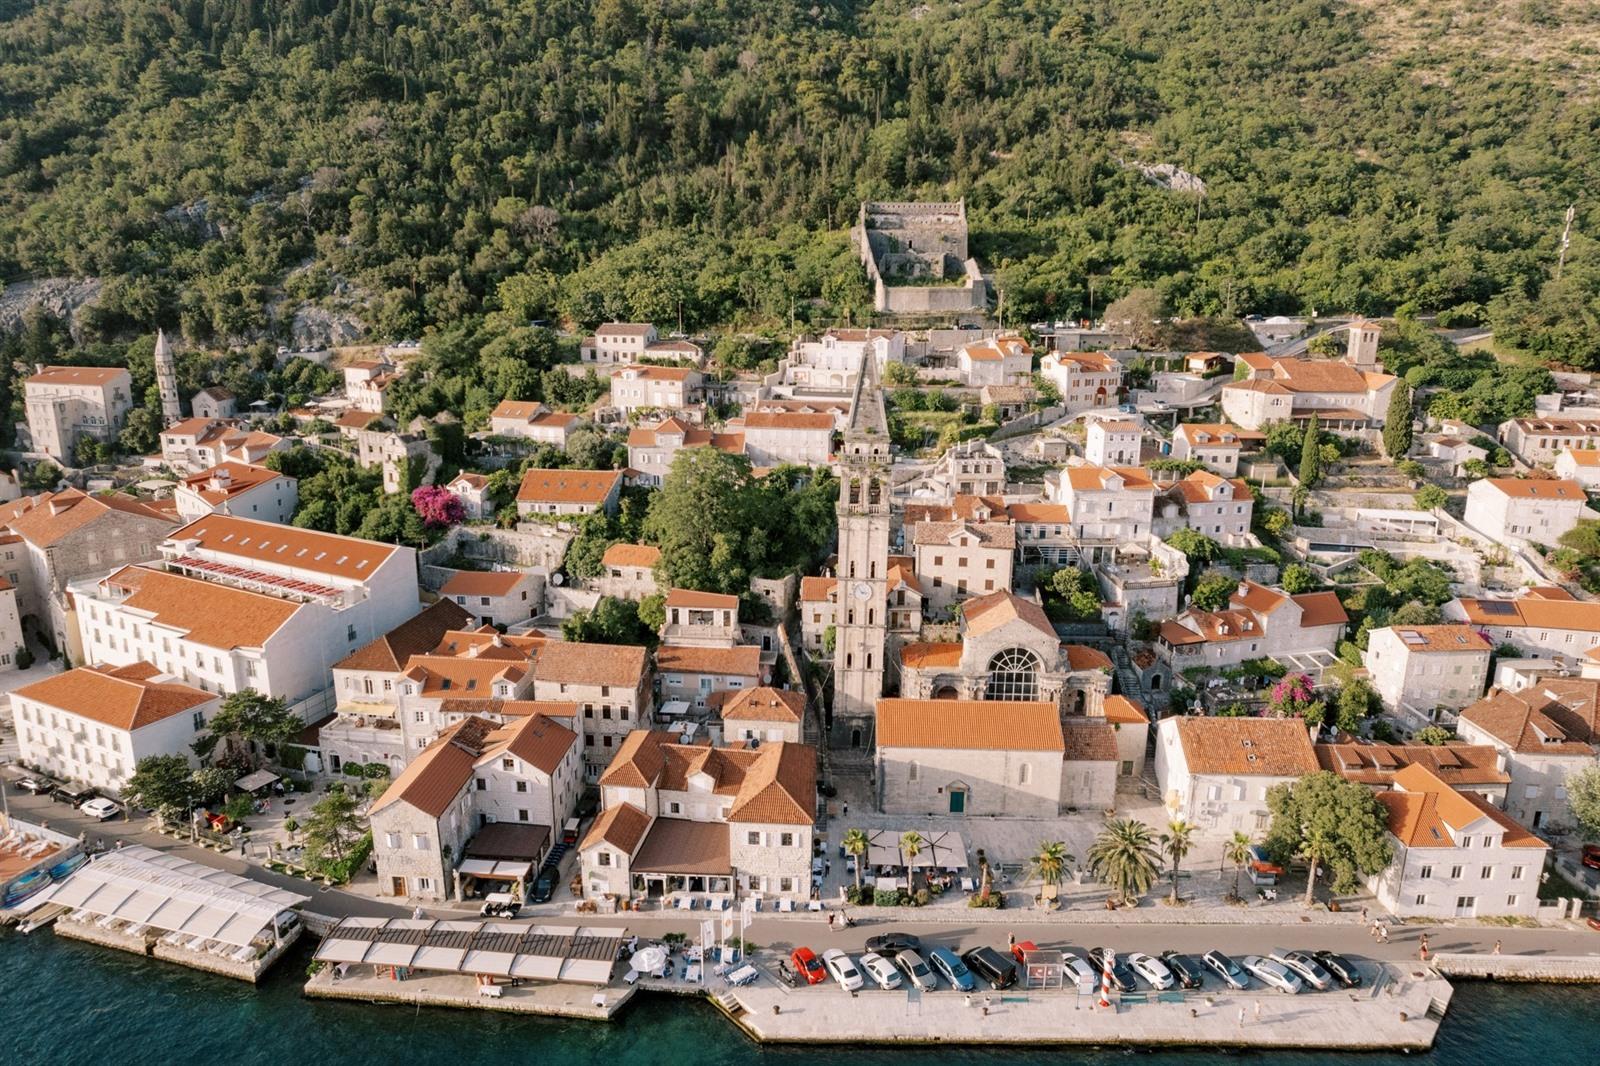 De baai van Kotor bezoeken? Alle bezienswaardigheden & info in Kotor